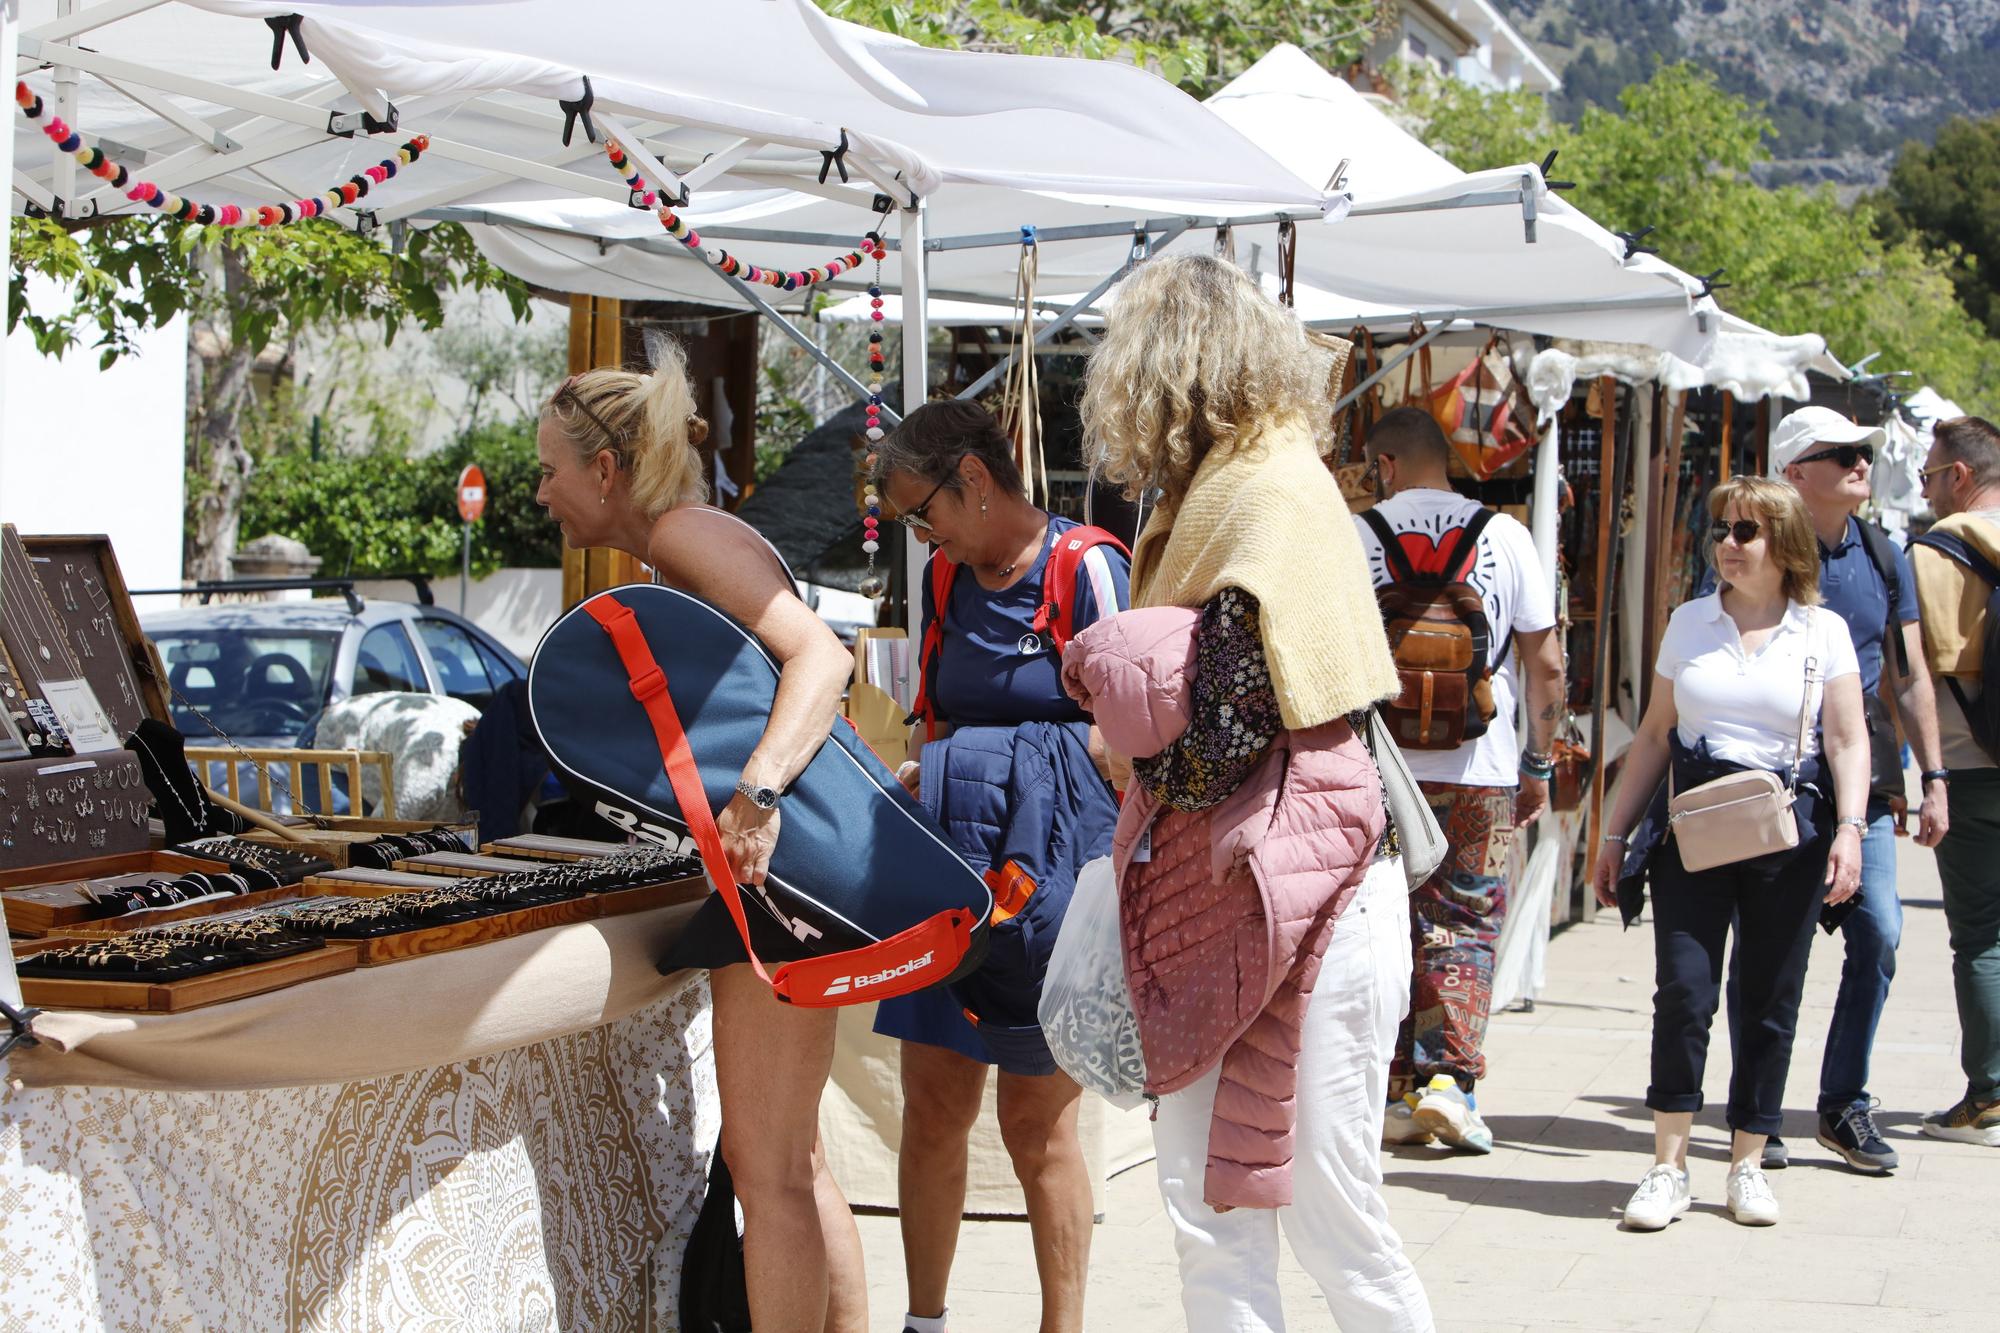 Sonne, Tram, Eis essen: So genießen die Mallorca-Urlauber die Stimmung in Port de Sóller